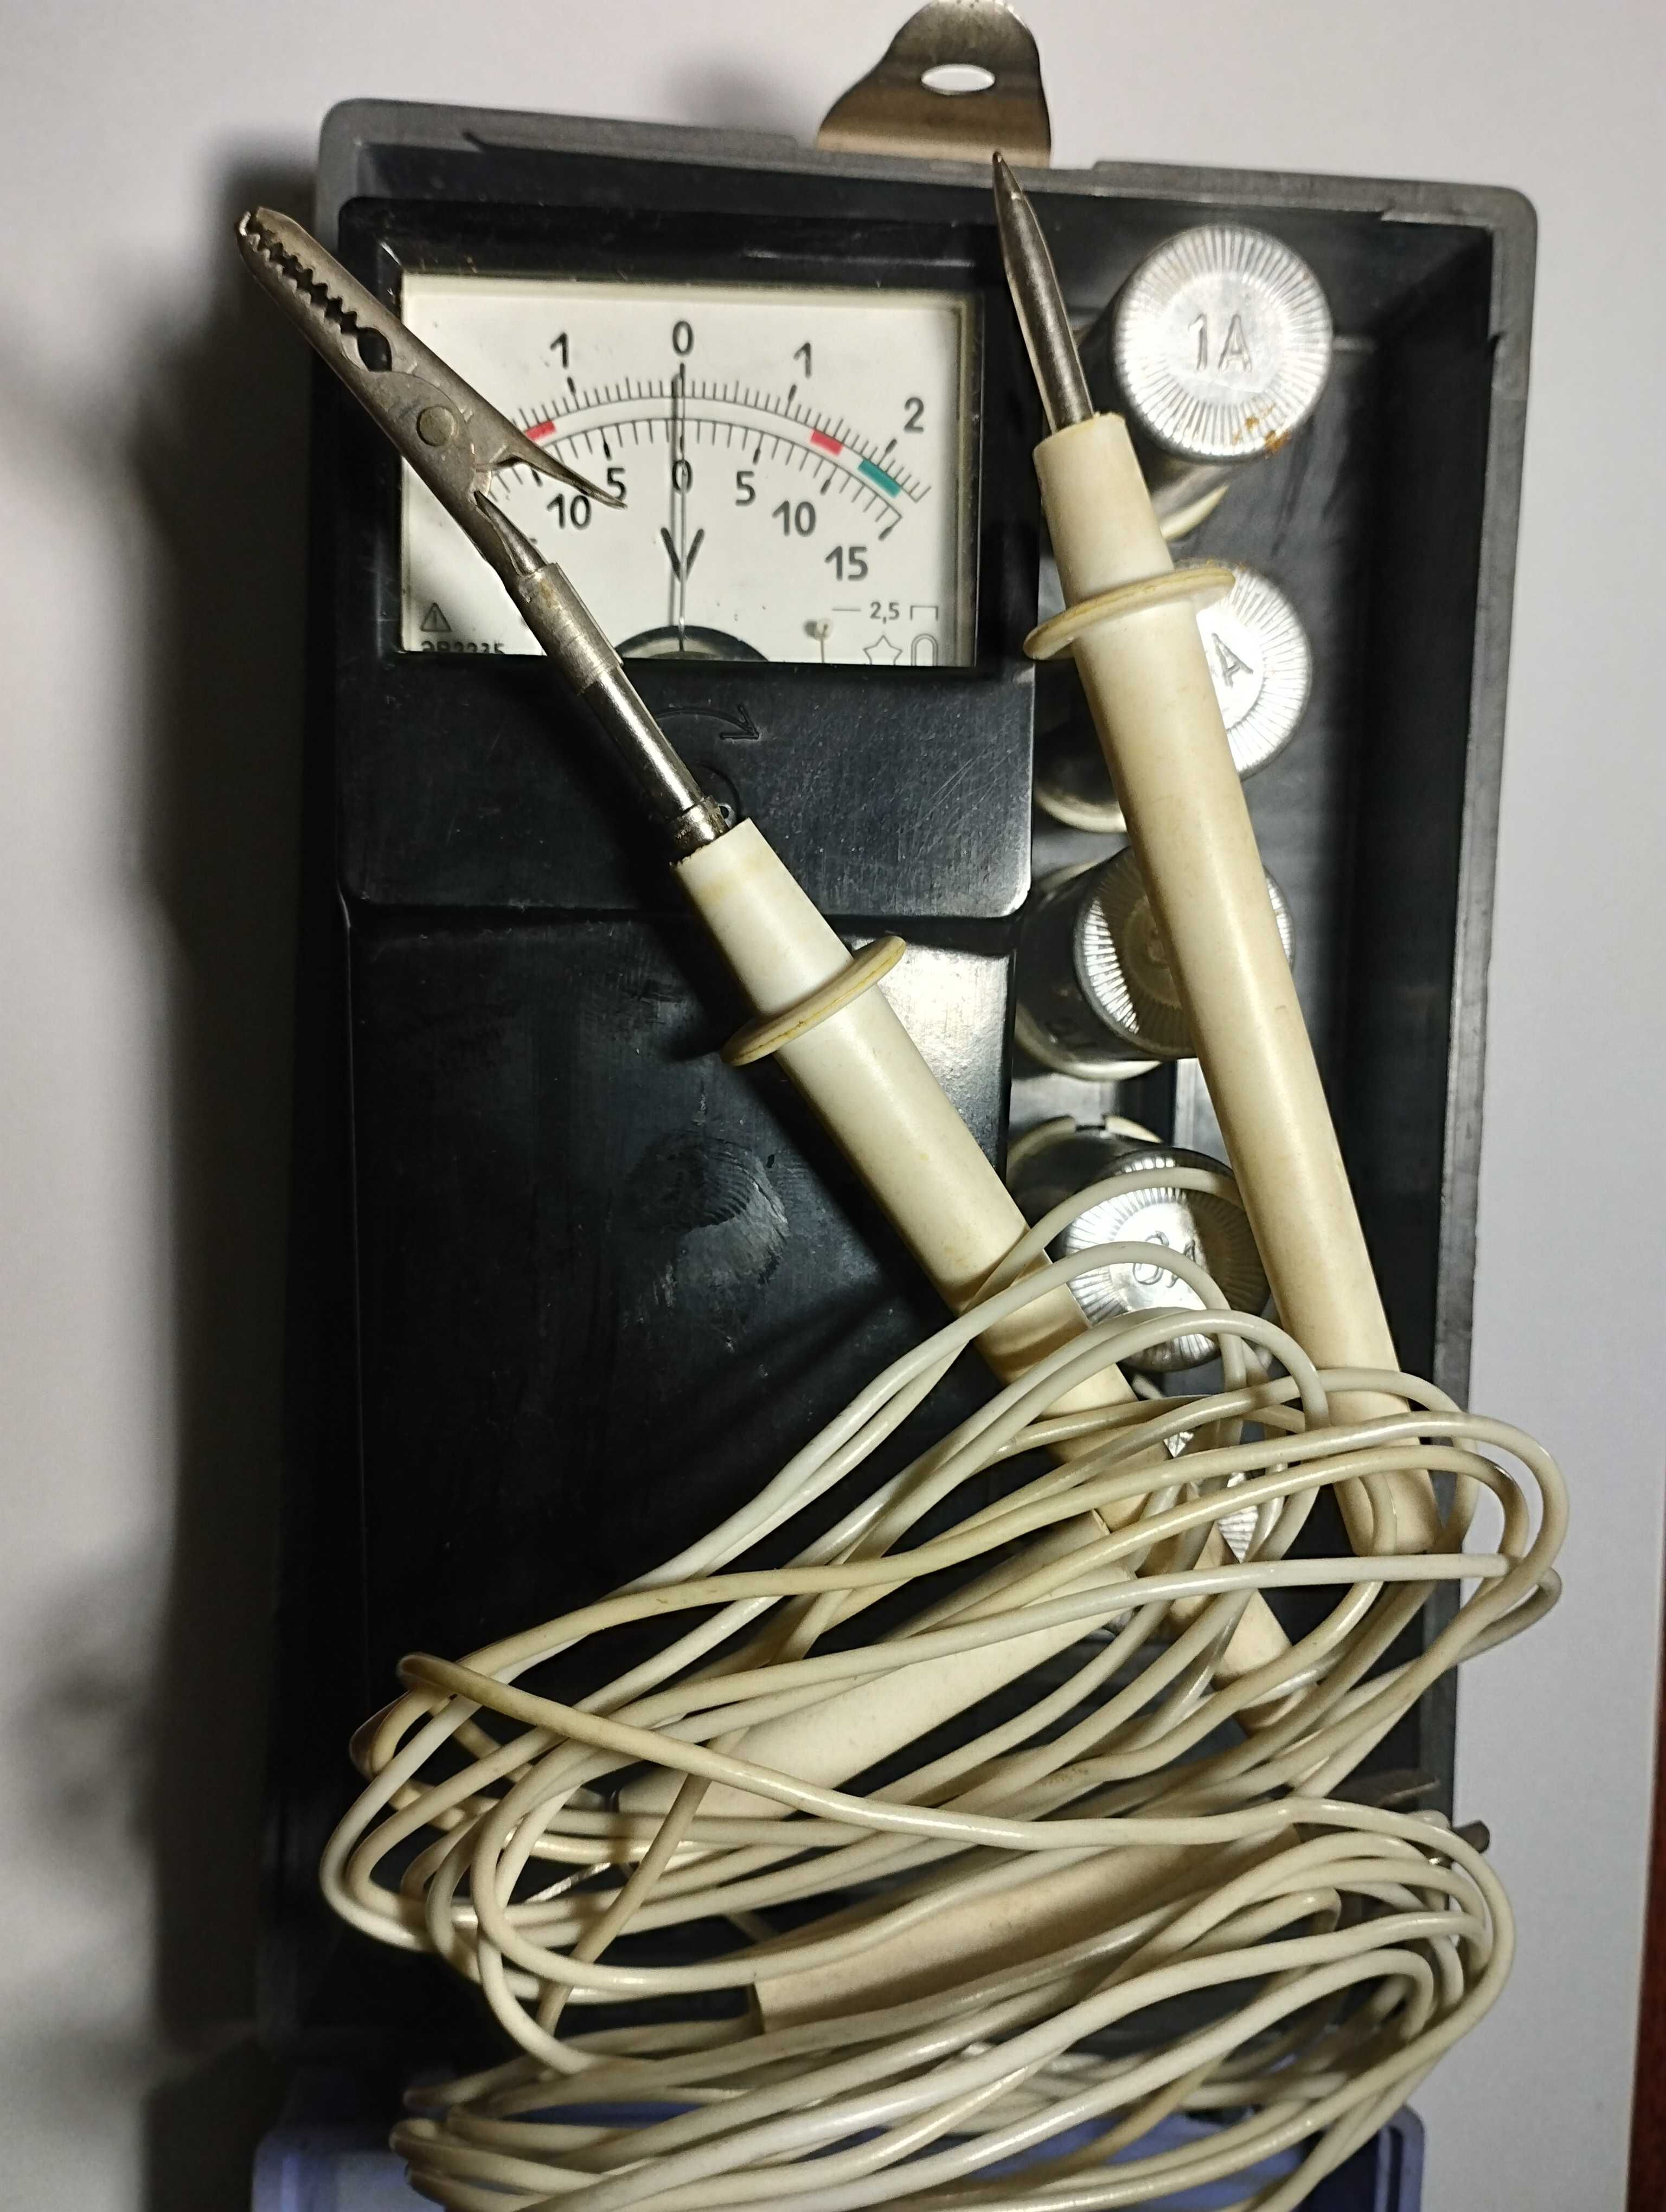 Нагрузочная вилка (Вольтметр) для проверки аккумуляторов времен СССР.